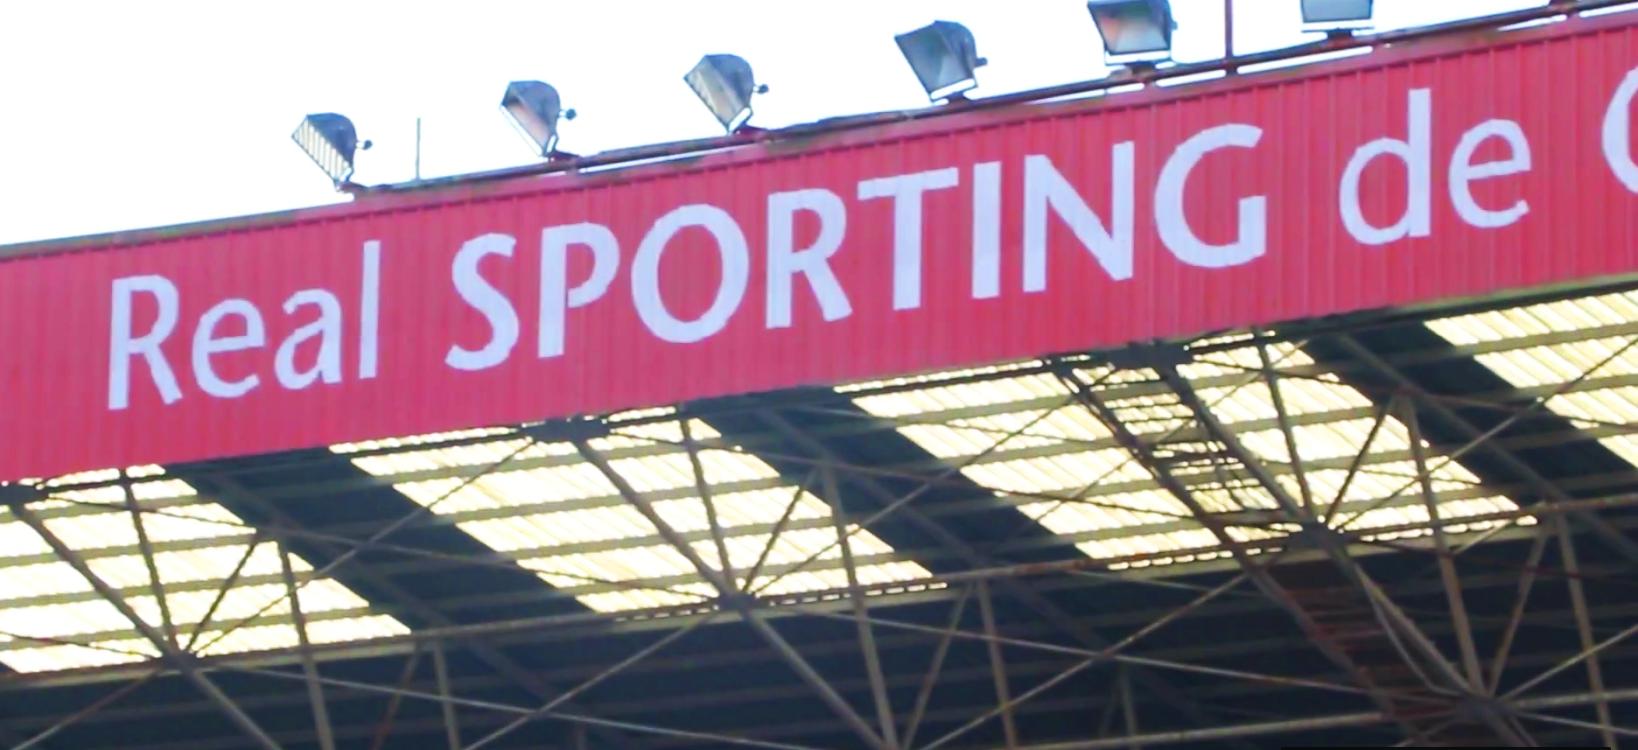 El filial disputará el primer puesto al CD Mirandés este domingo en El Molinón Sporting1905